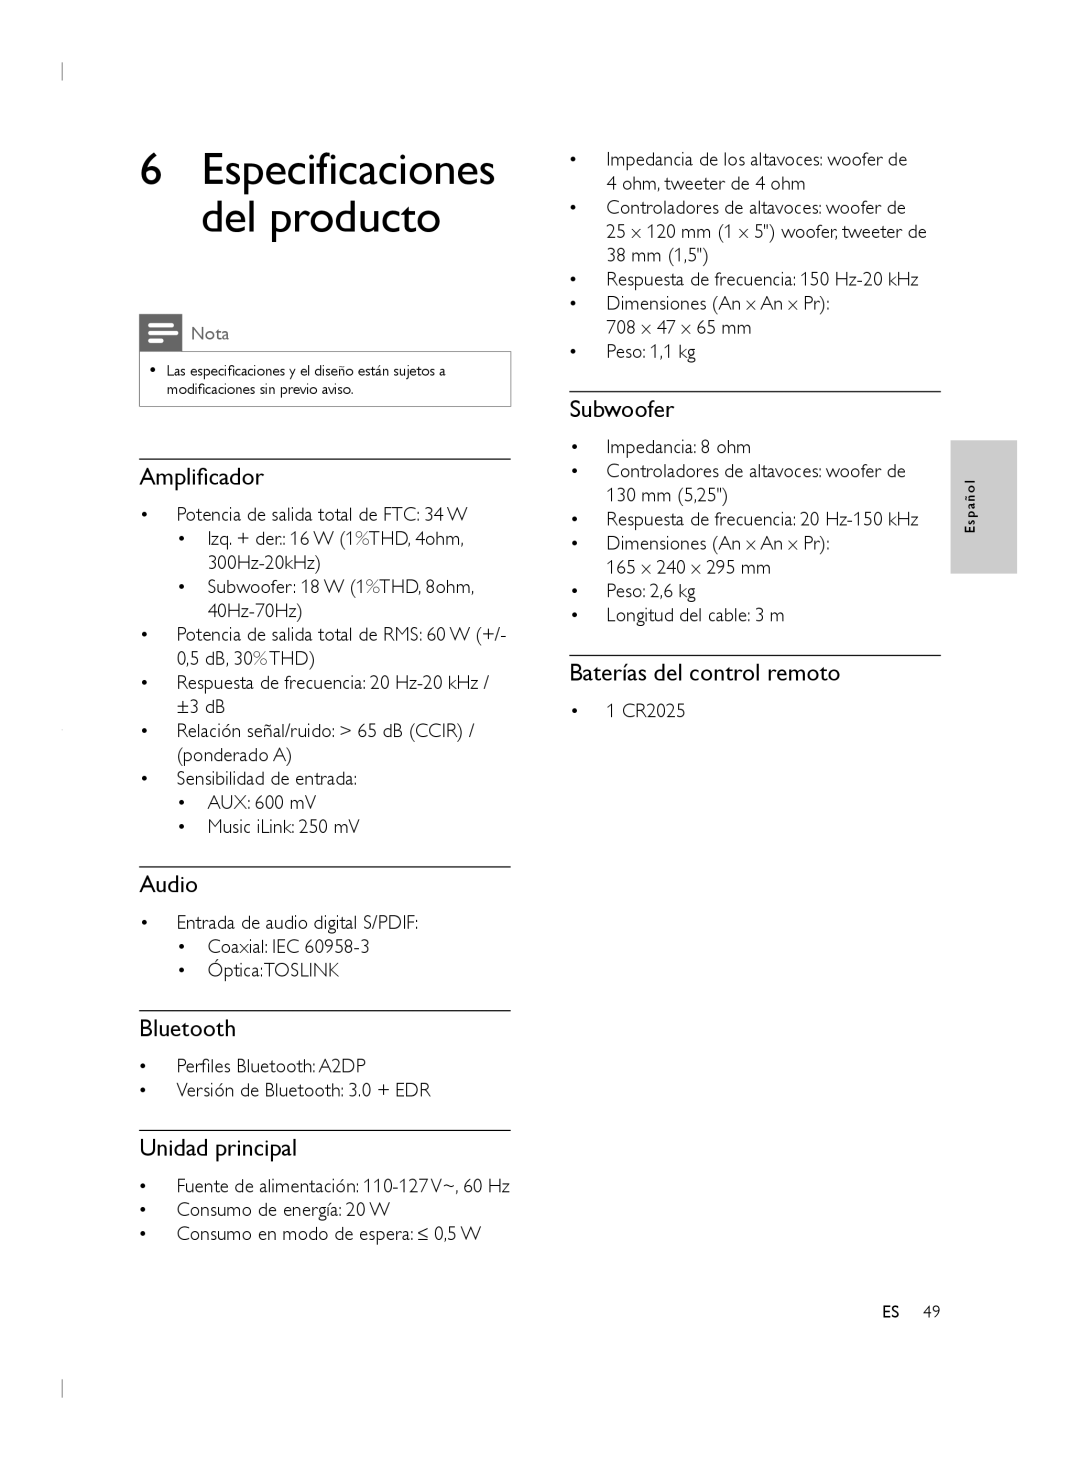 Philips CSS2133B user manual 6Especificaciones del producto, Amplificador, Audio, Bluetooth, Unidad principal, Subwoofer 